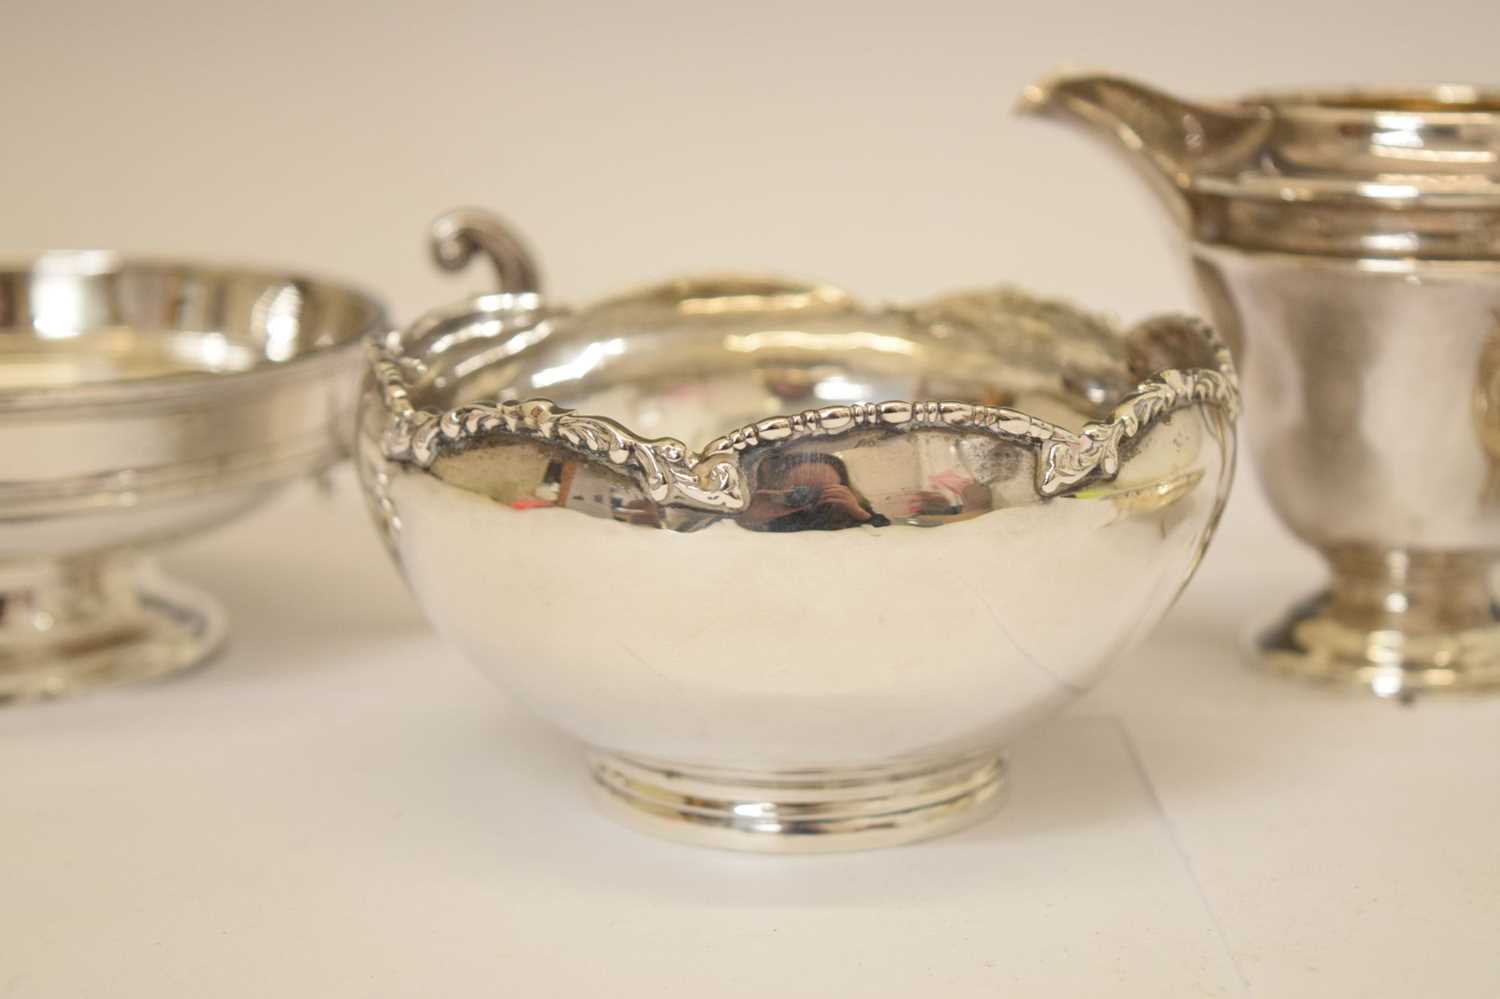 George V silver twin-handled pedestal bowl, George V cream jug, etc - Image 4 of 10